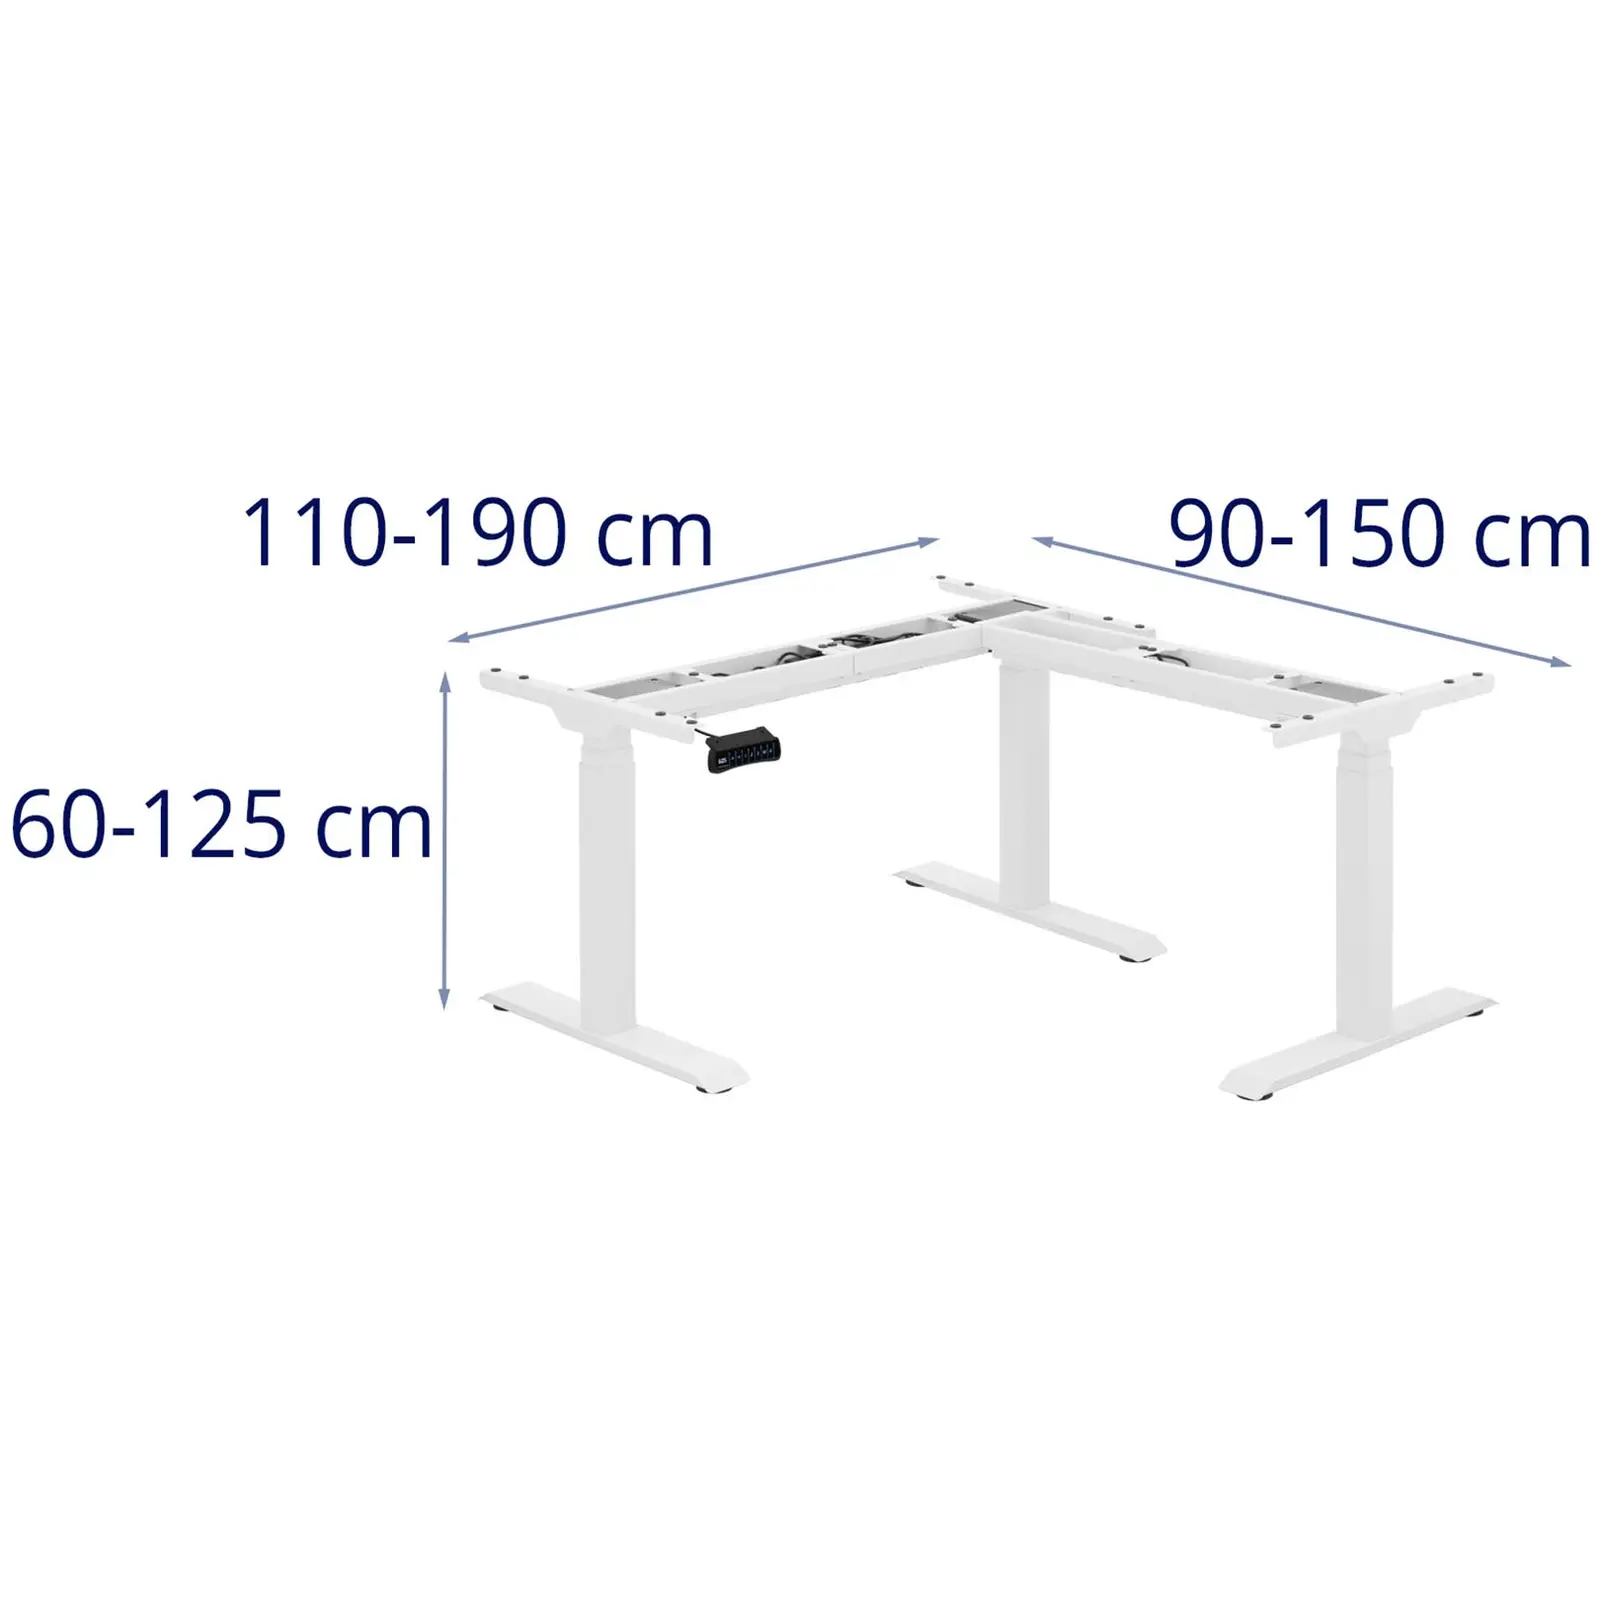 Stelaż pod biurko - wysokość: 60-125 cm - szerokość: 90-150 cm (po lewej) / 110-190 cm (po prawej)